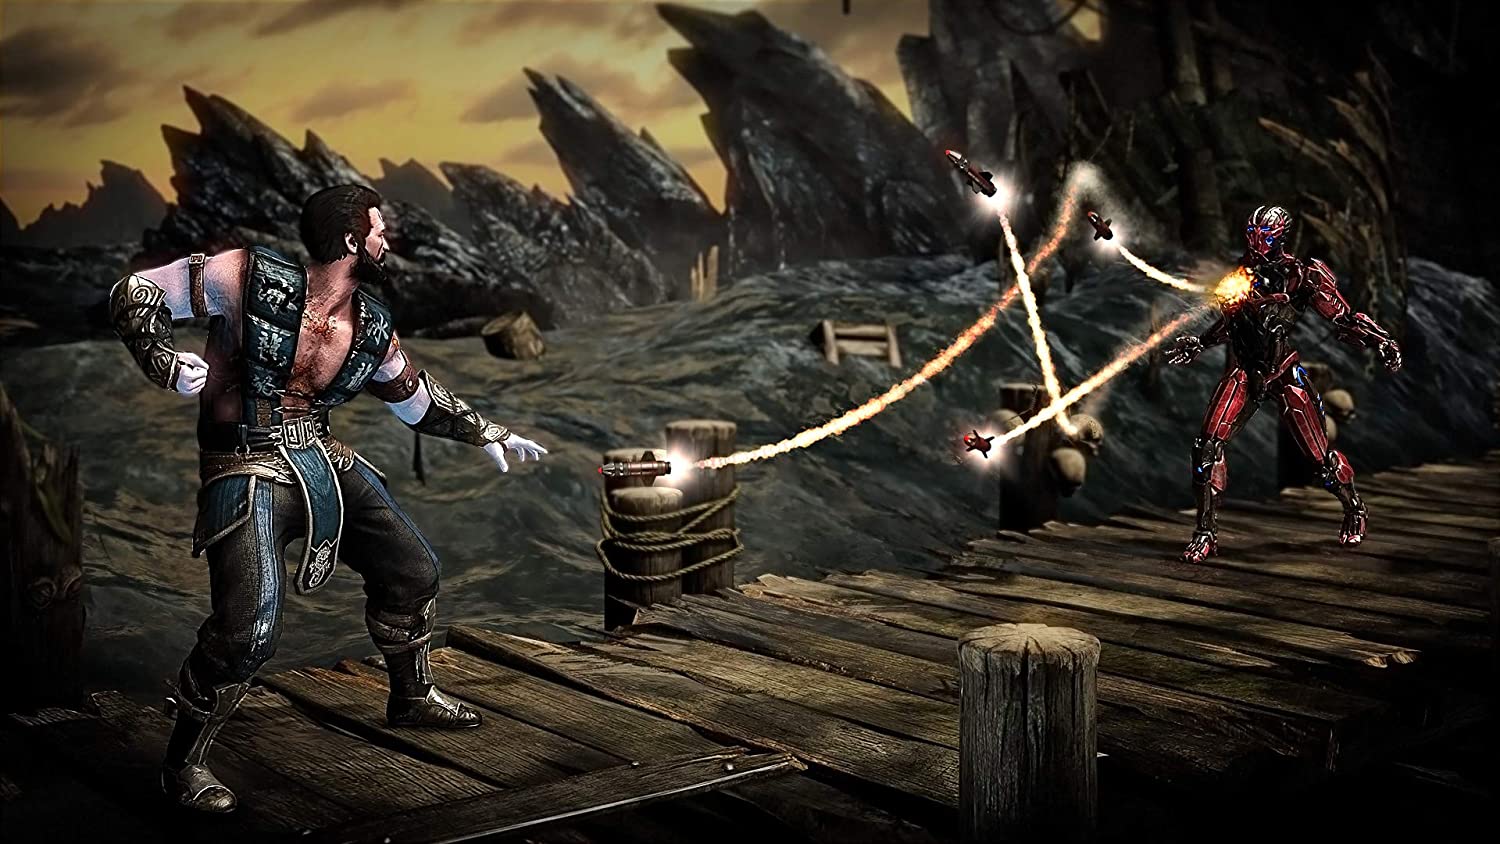 Juego PlayStation 4 - Mortal Kombat XL